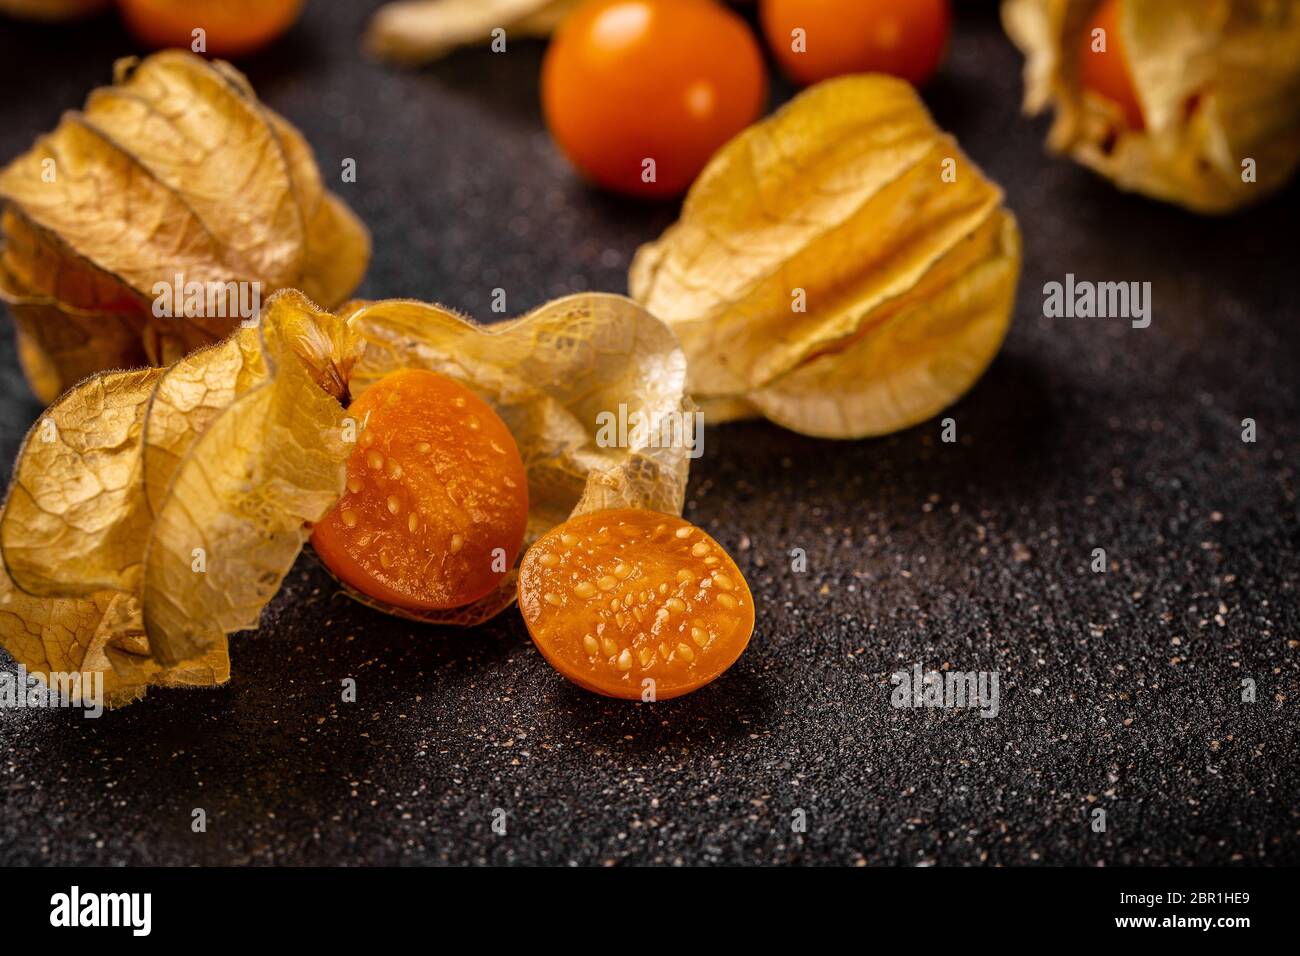 Physalis peruviana sabrosos frutos comestibles naranja cortada a la mitad Foto de stock